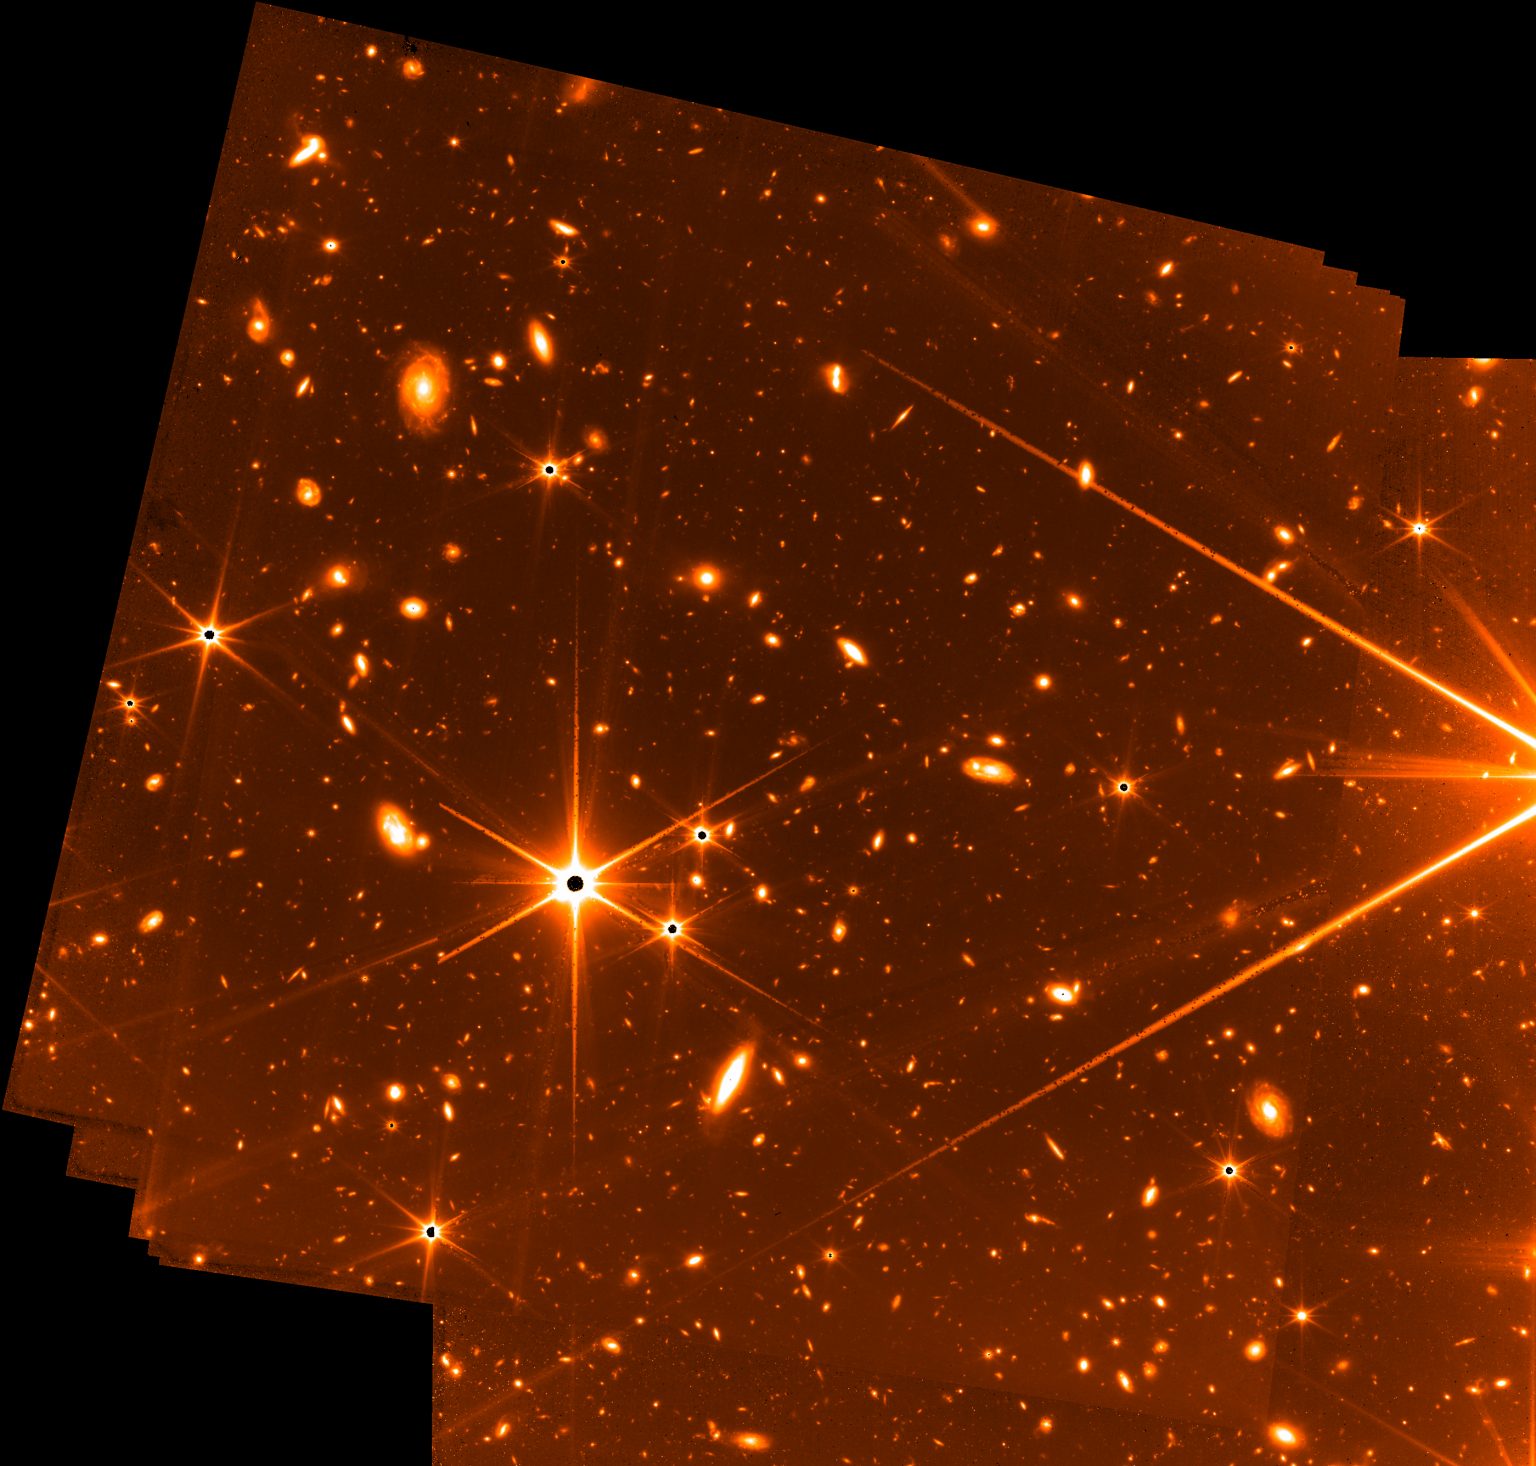 Снимки с телескопа Джеймса Уэбба в хорошем качестве